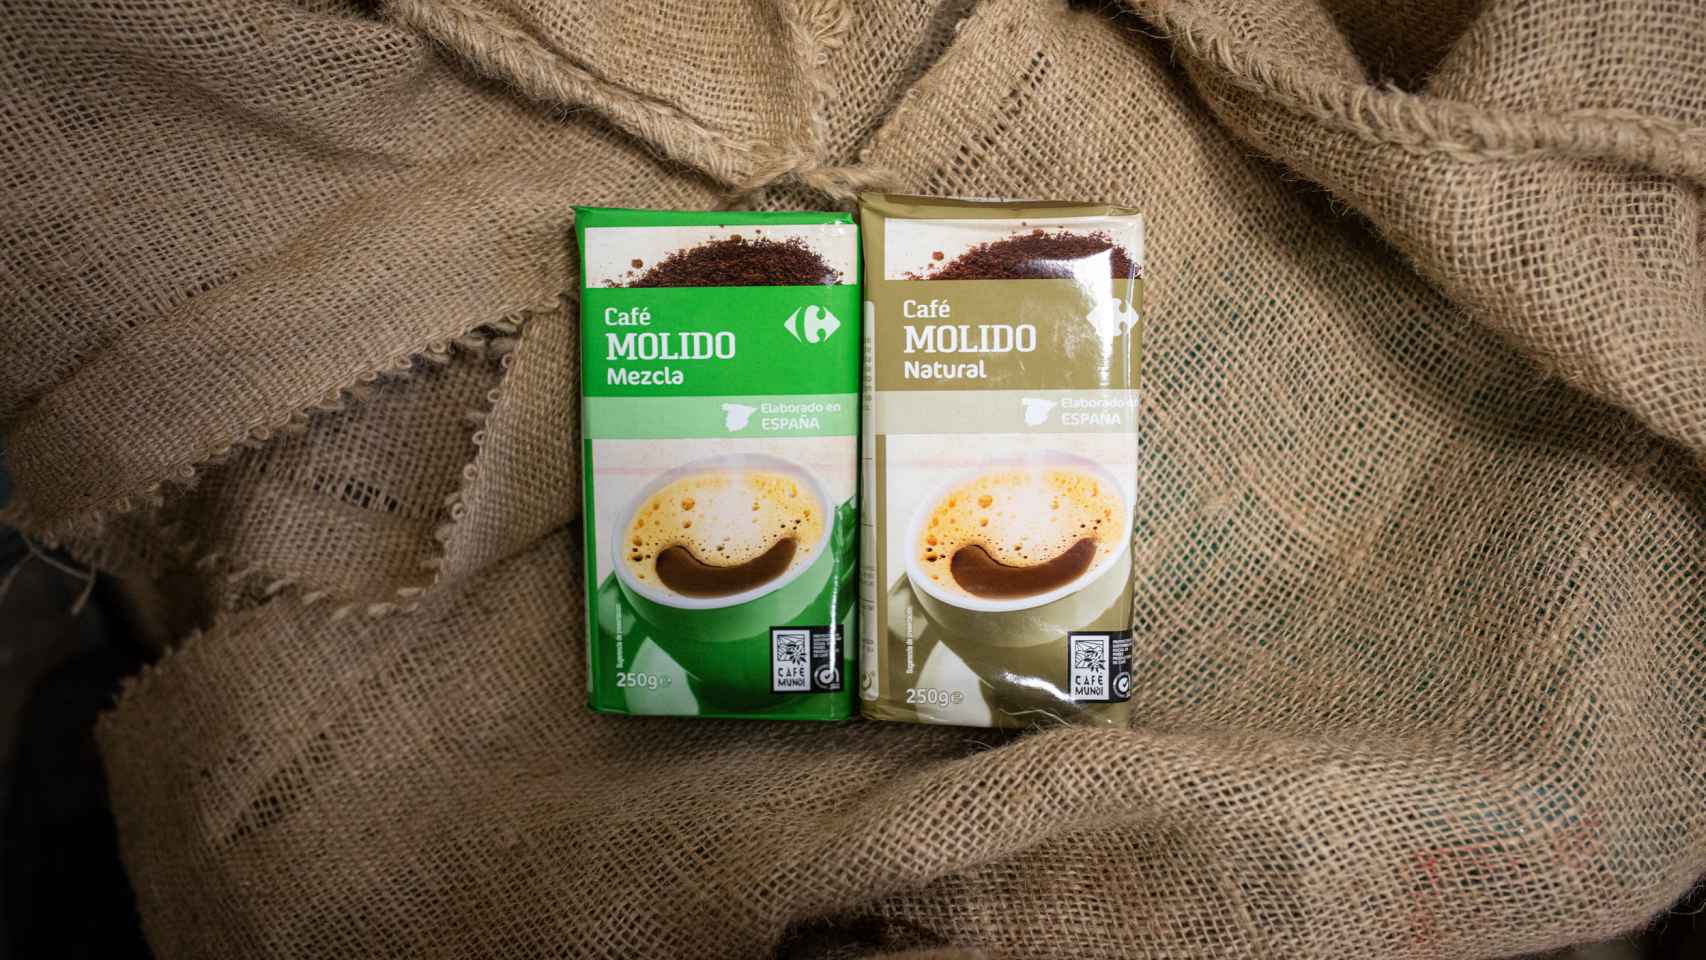 A la izquierda, el paquete de café molido mezcla de Carrefour y, a la derecha, el natural.